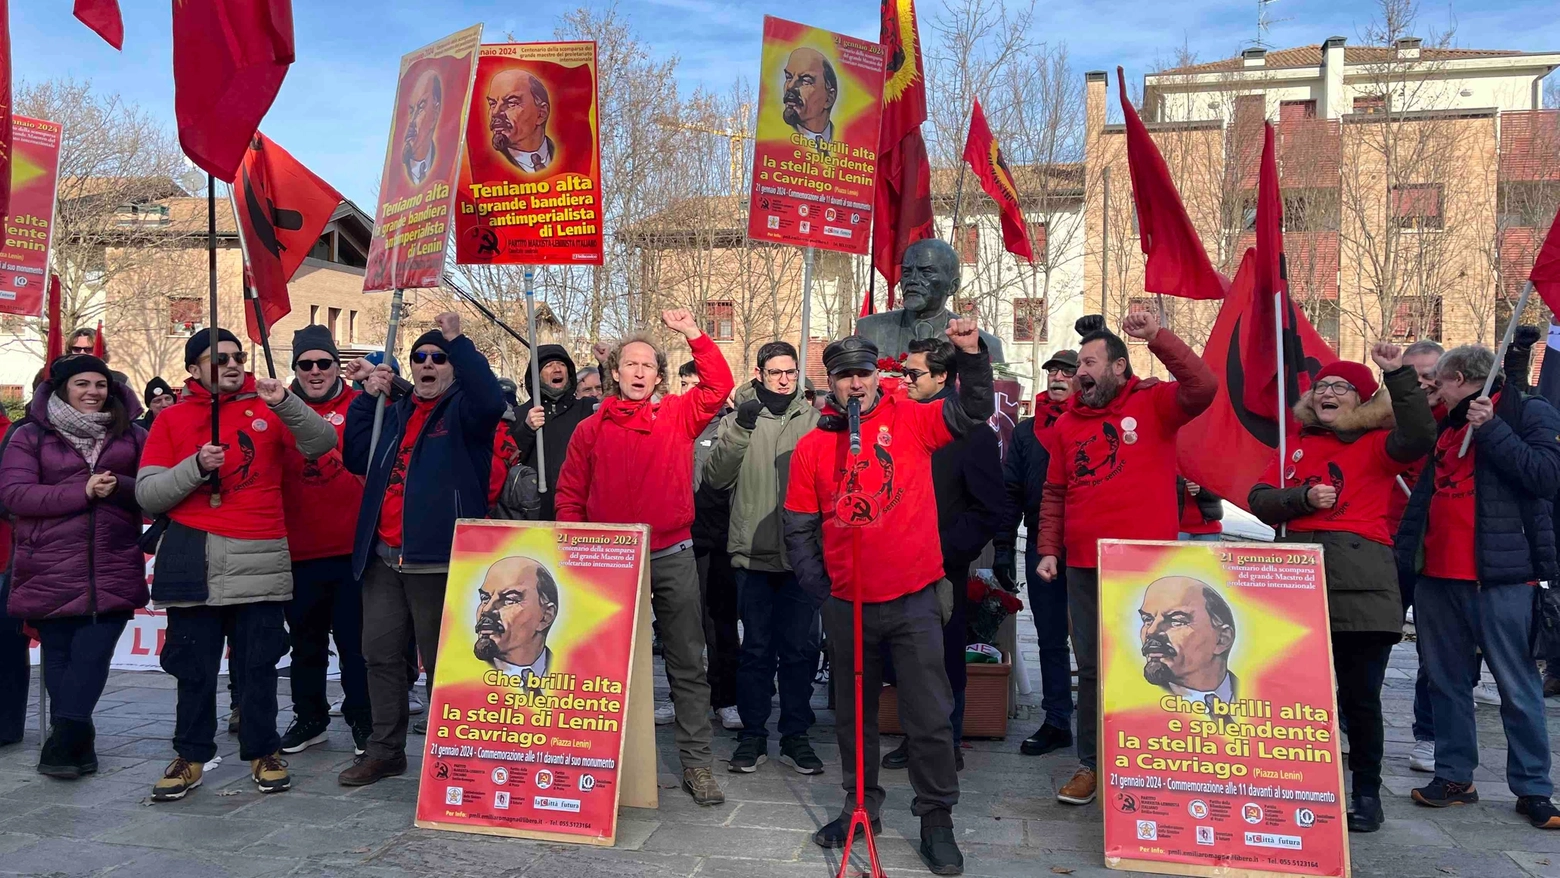 La celebrazione di Lenin a Cavriago, in provincia di Reggio Emilia